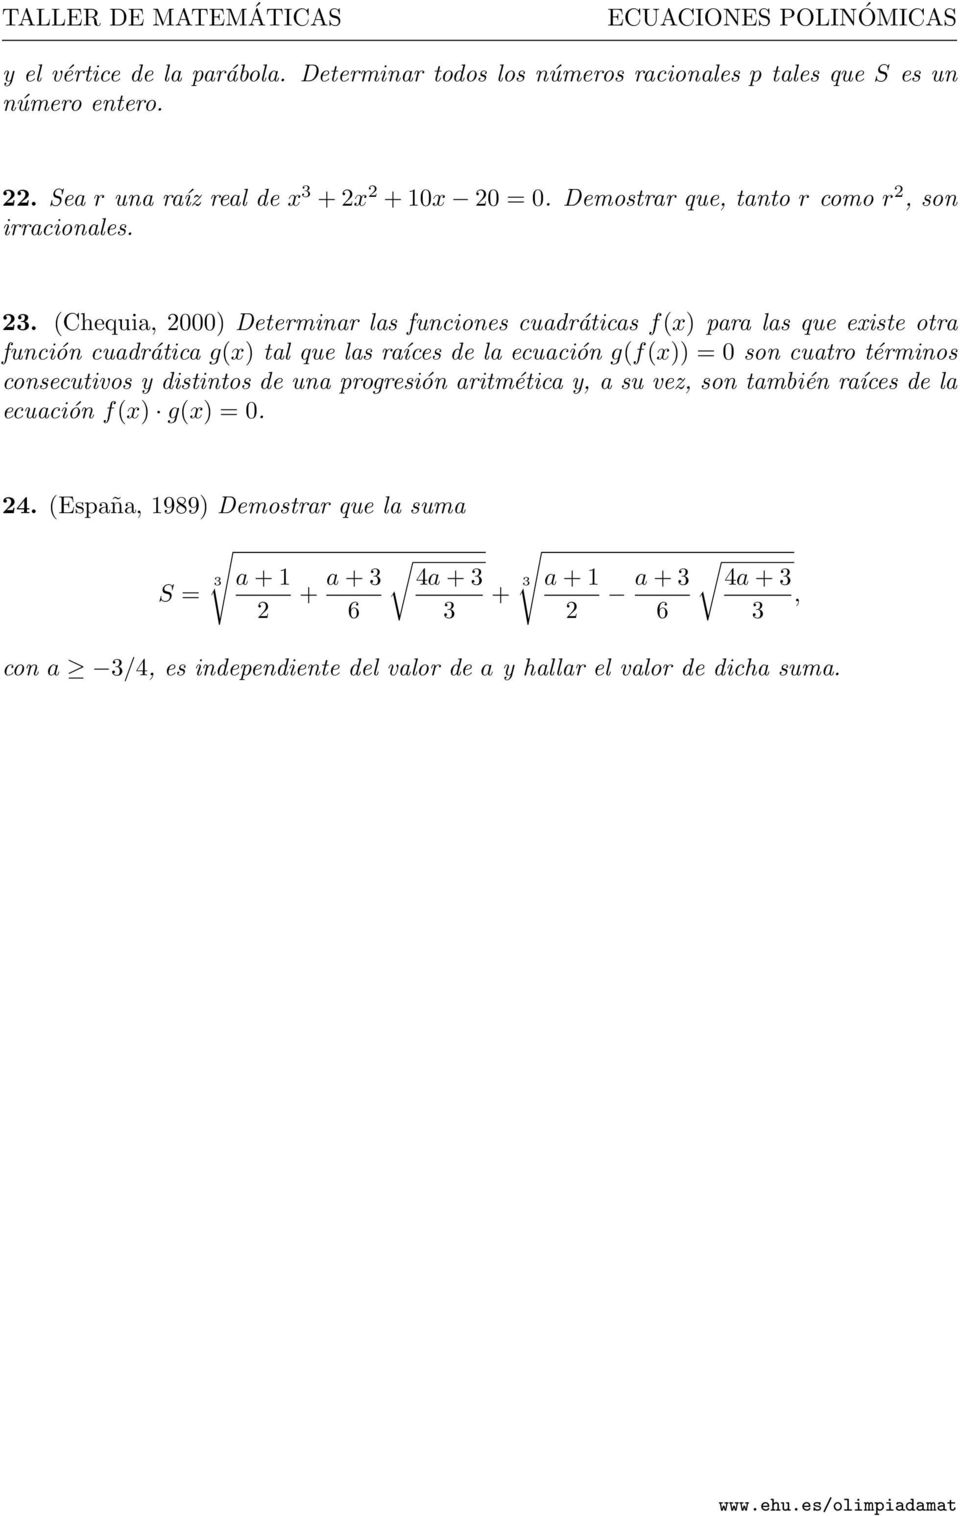 (Chequia, 2000) Determinar las funciones cuadráticas f(x) para las que existe otra función cuadrática g(x) tal que las raíces de la ecuación g(f(x)) = 0 son cuatro